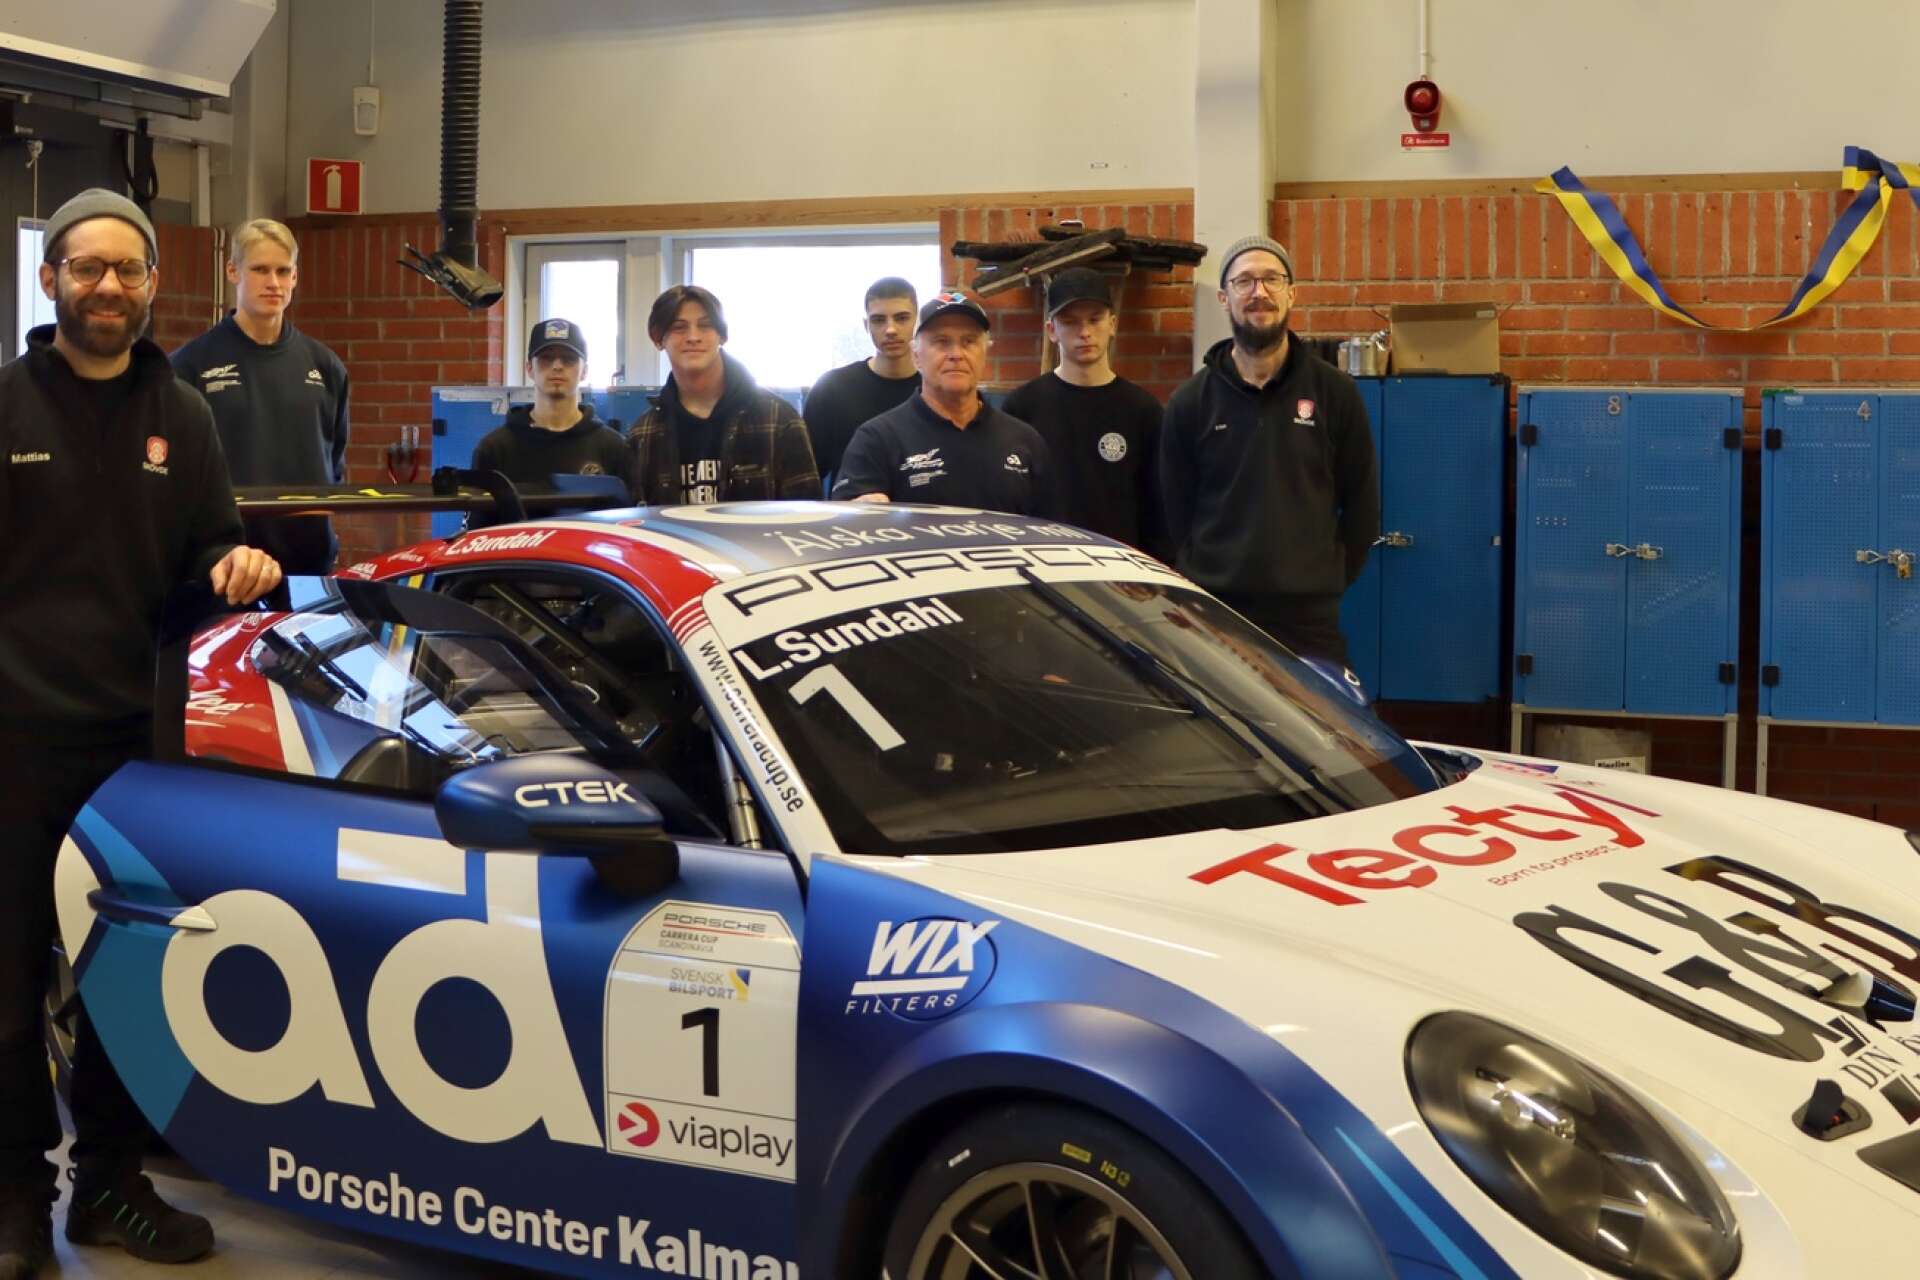 Kågered Racing med Micke Kågered visade upp racingbil och undervisade bland annat i oljelära och mätteknik. Här med lärarna Mattias Björkenor, Erik Stoor och intresserade elever.